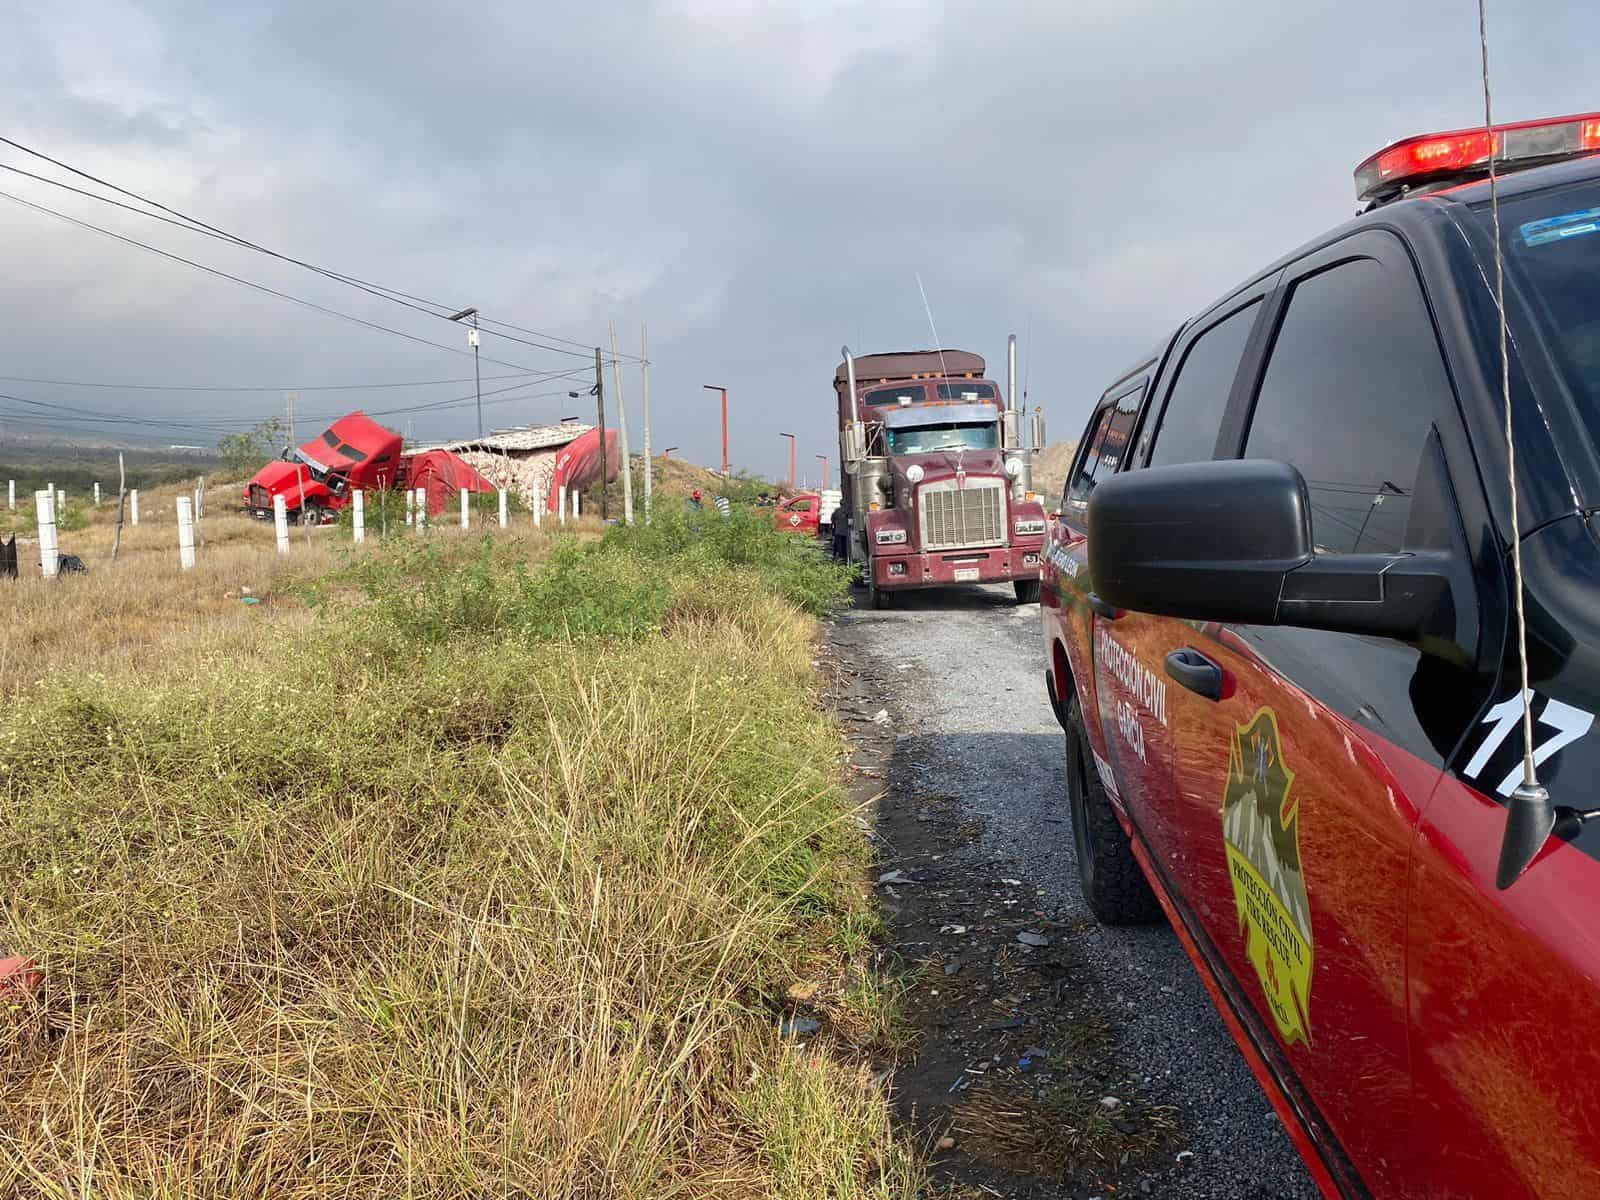 Luego de una aparente falla mecánica, el conductor de un tráiler utilizó una rampa de emergencia y al final de la misma terminó volcando su carga de 42 toneladas de cebolla, ayer en la Carretera a Saltillo, municipio de García.